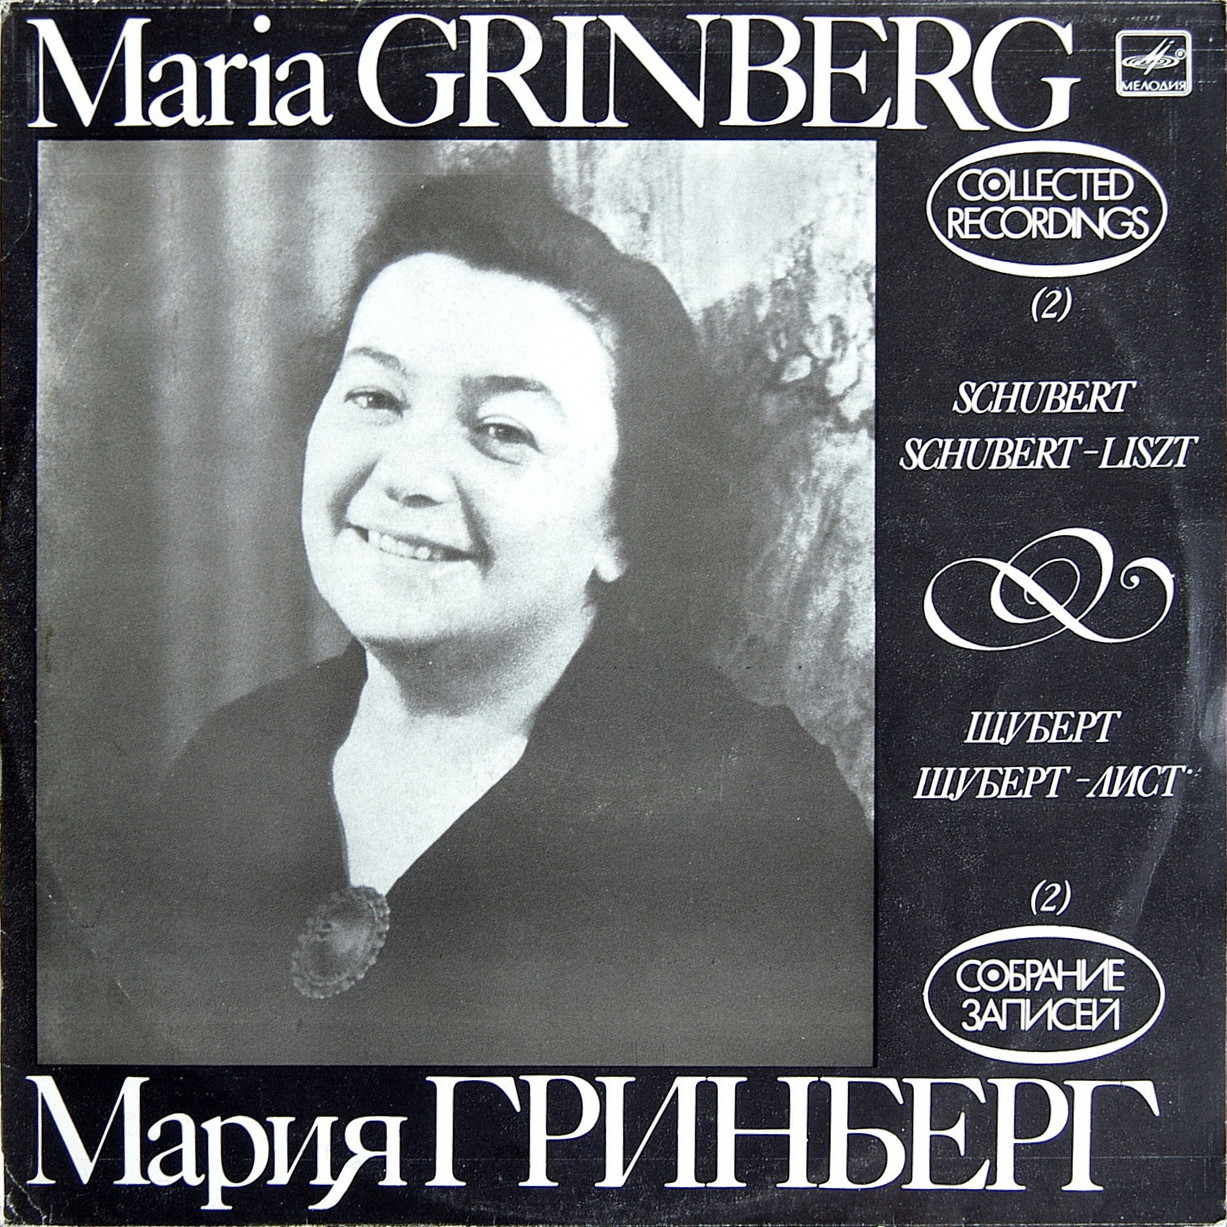 Мария ГРИНБЕРГ (ф-но). Собрание записей (2)